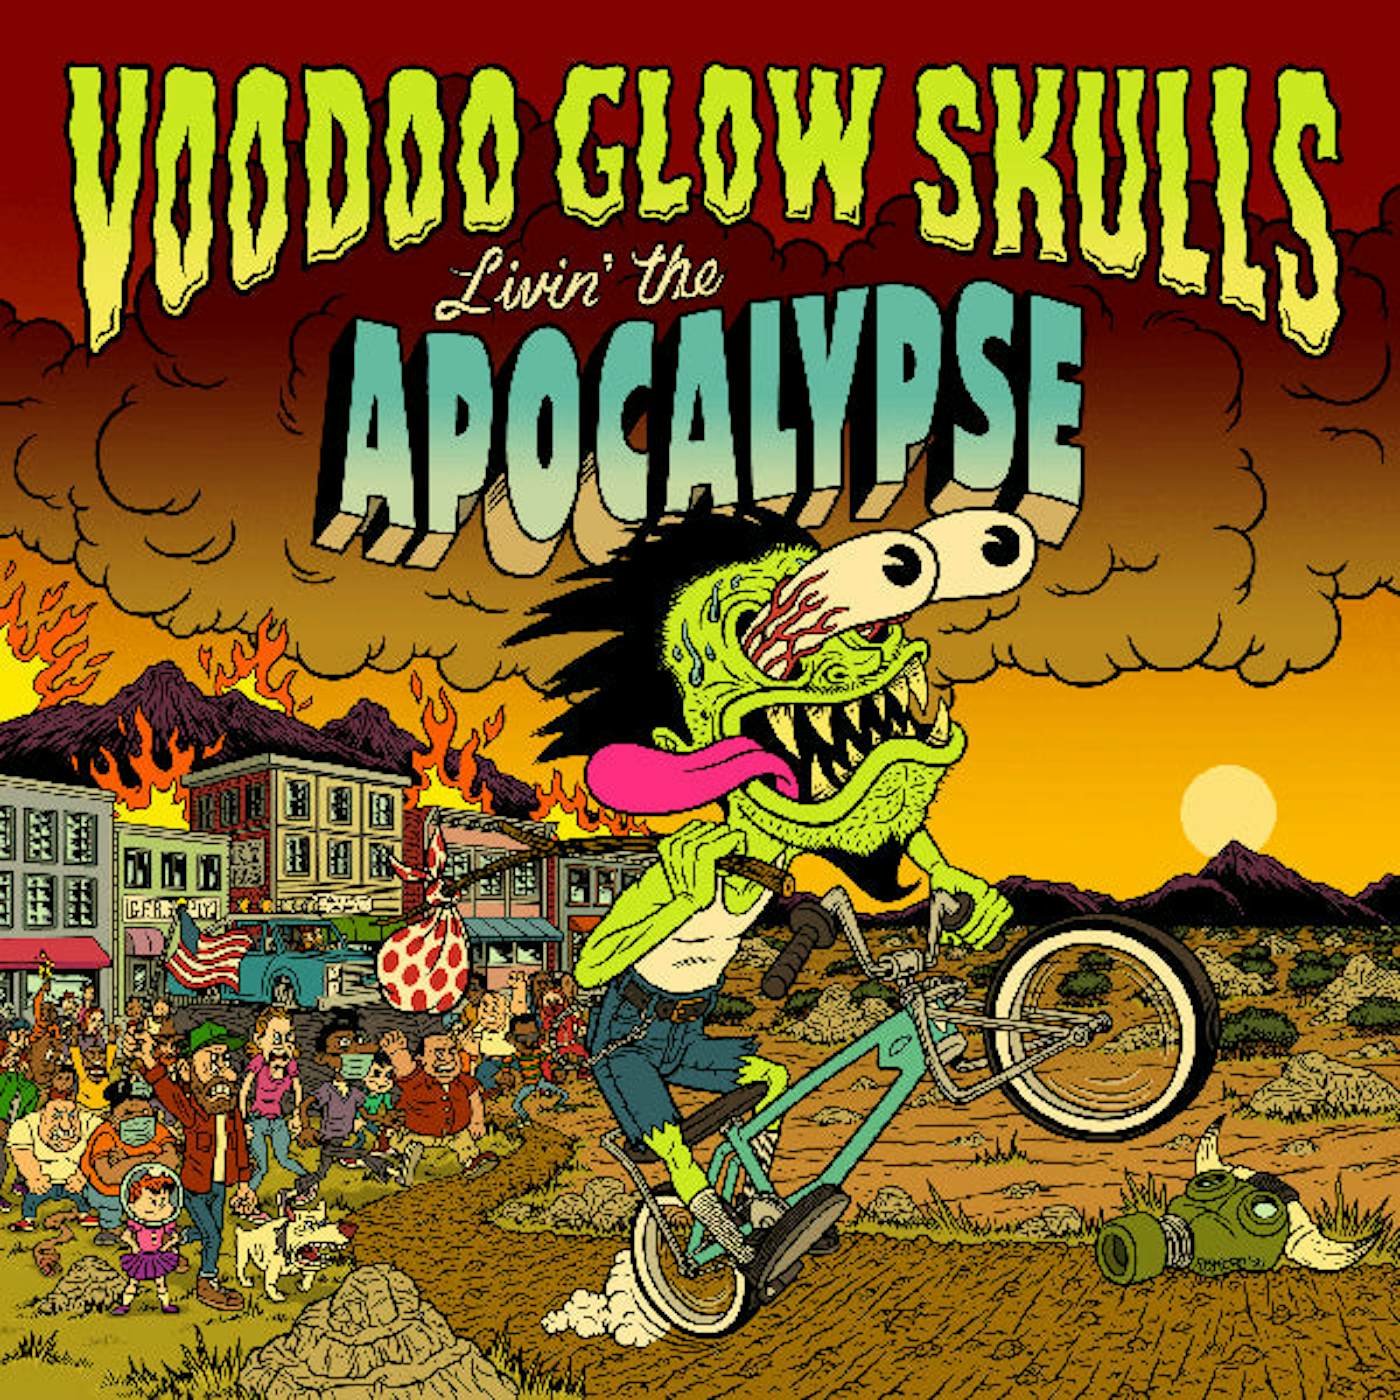 Voodoo Glow Skulls LP - Livin' The Apocalypse (Vinyl)